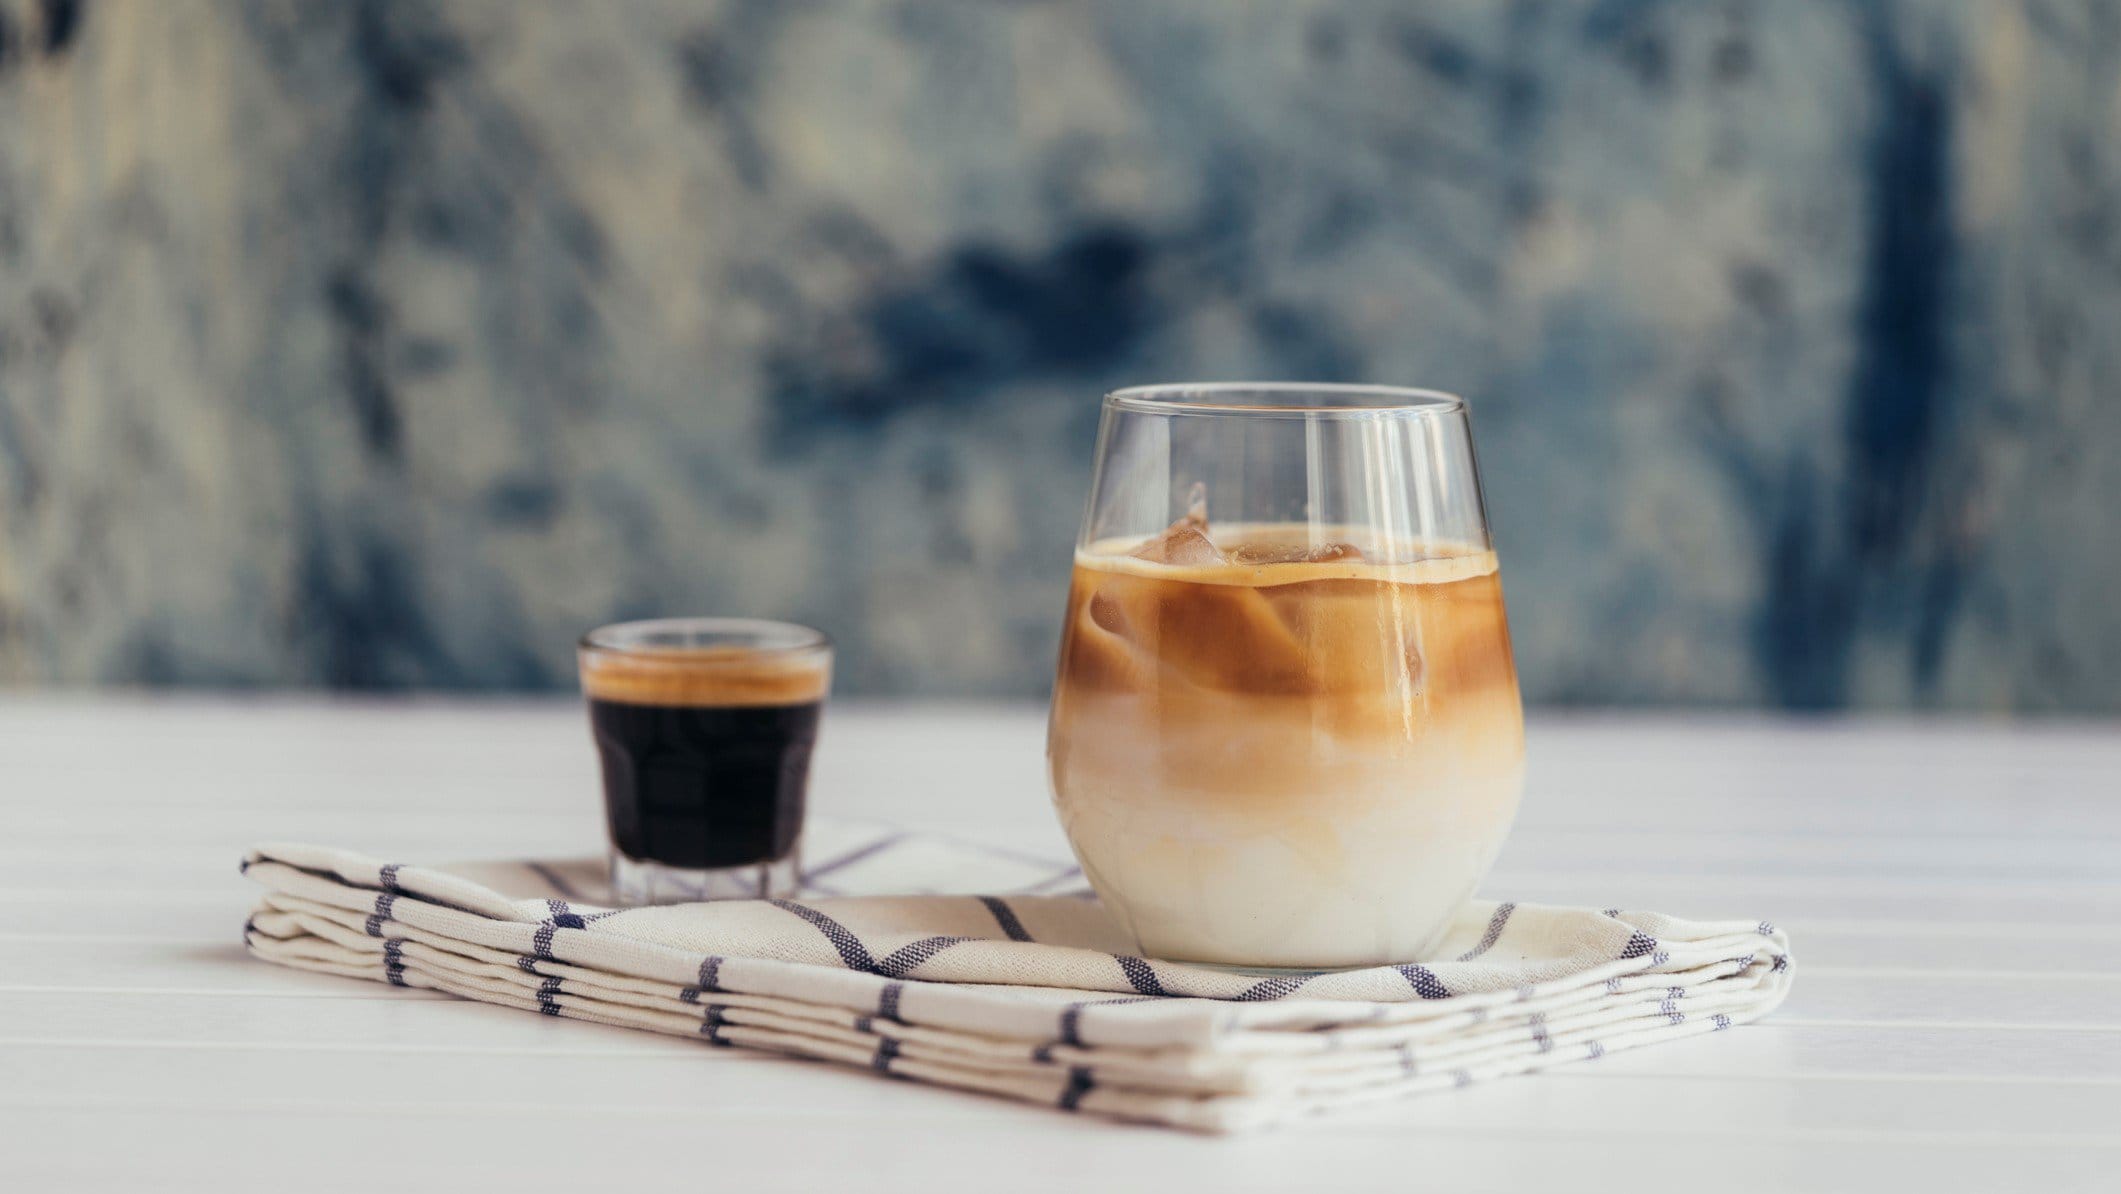 Cold Johnny Eiskaffee in einem Glas mit Espresso auf Tuch und hellem Tisch vor blau-weißem Hintergrund. Frontalansicht.